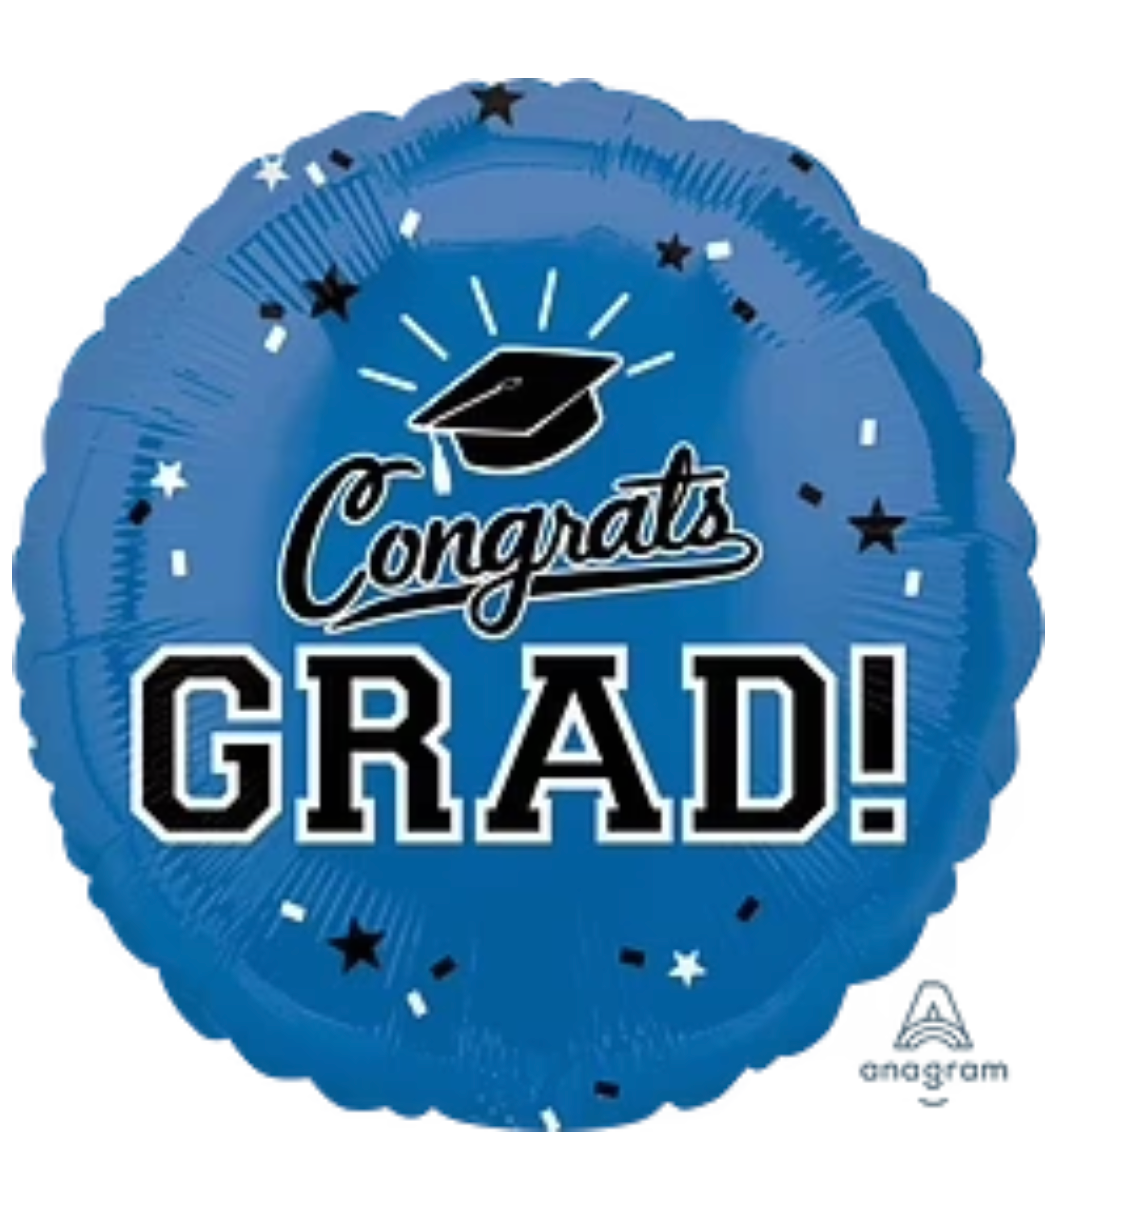 Congrats Grad! 18